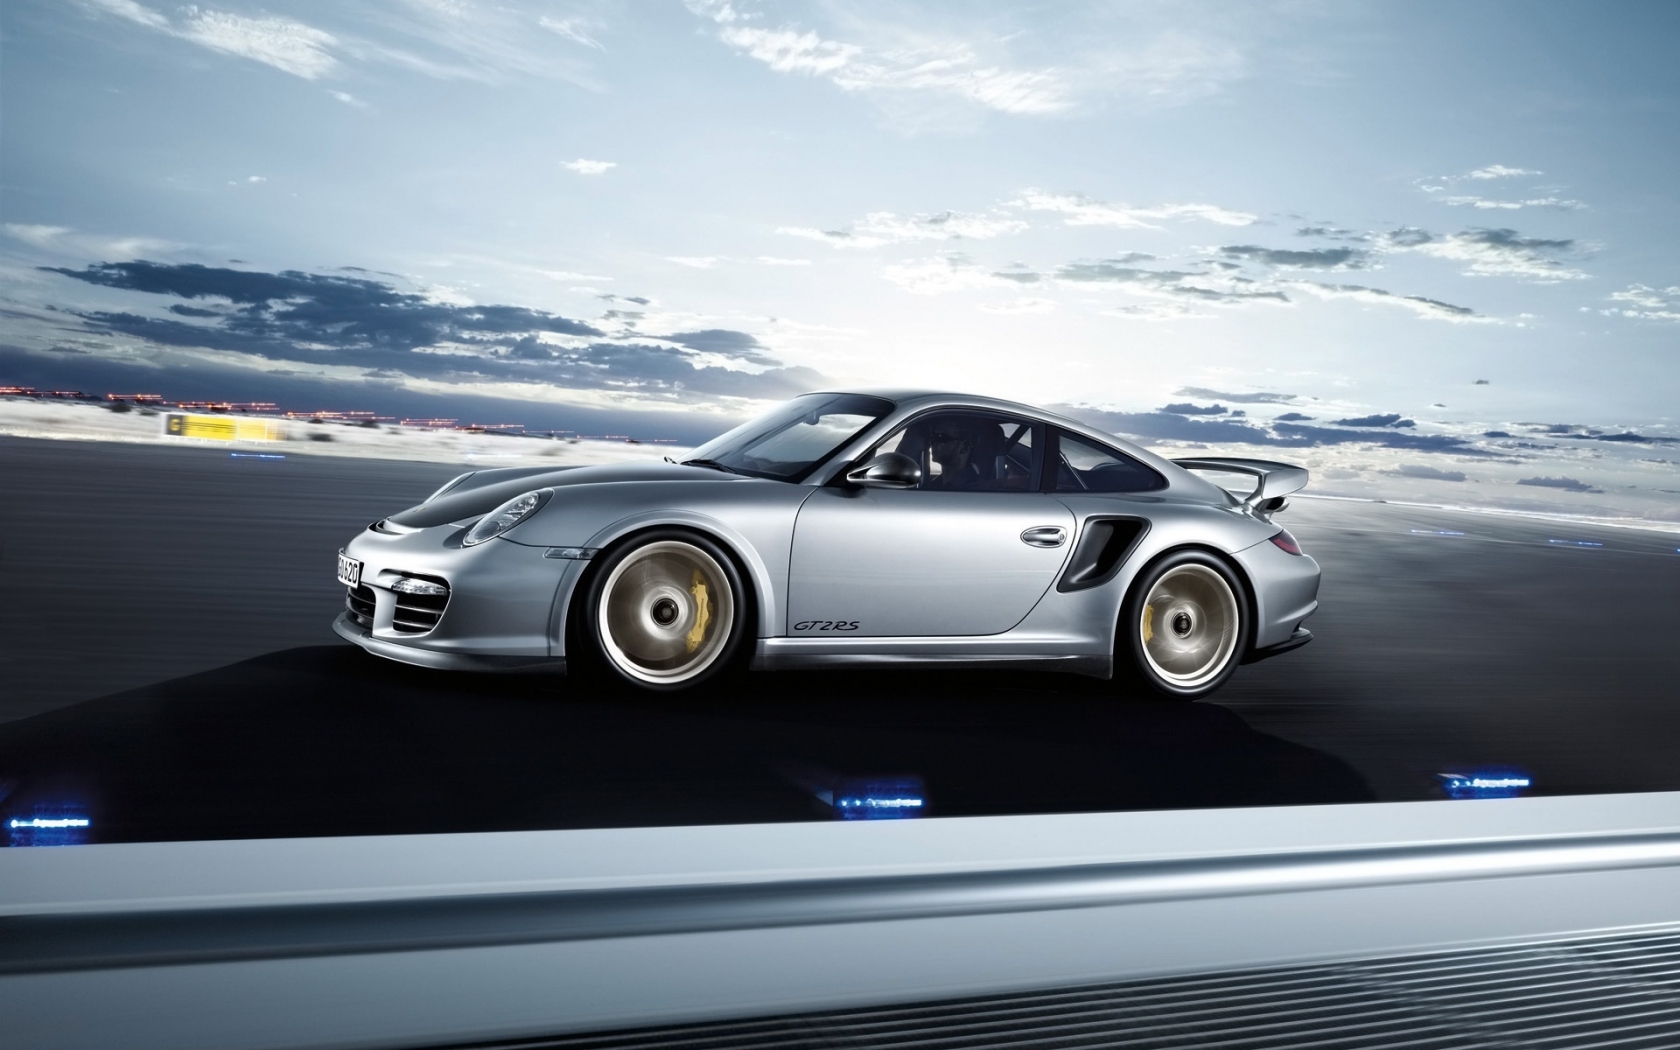 Porsche 911 GT2 RS 2011 Speed for 1680 x 1050 widescreen resolution